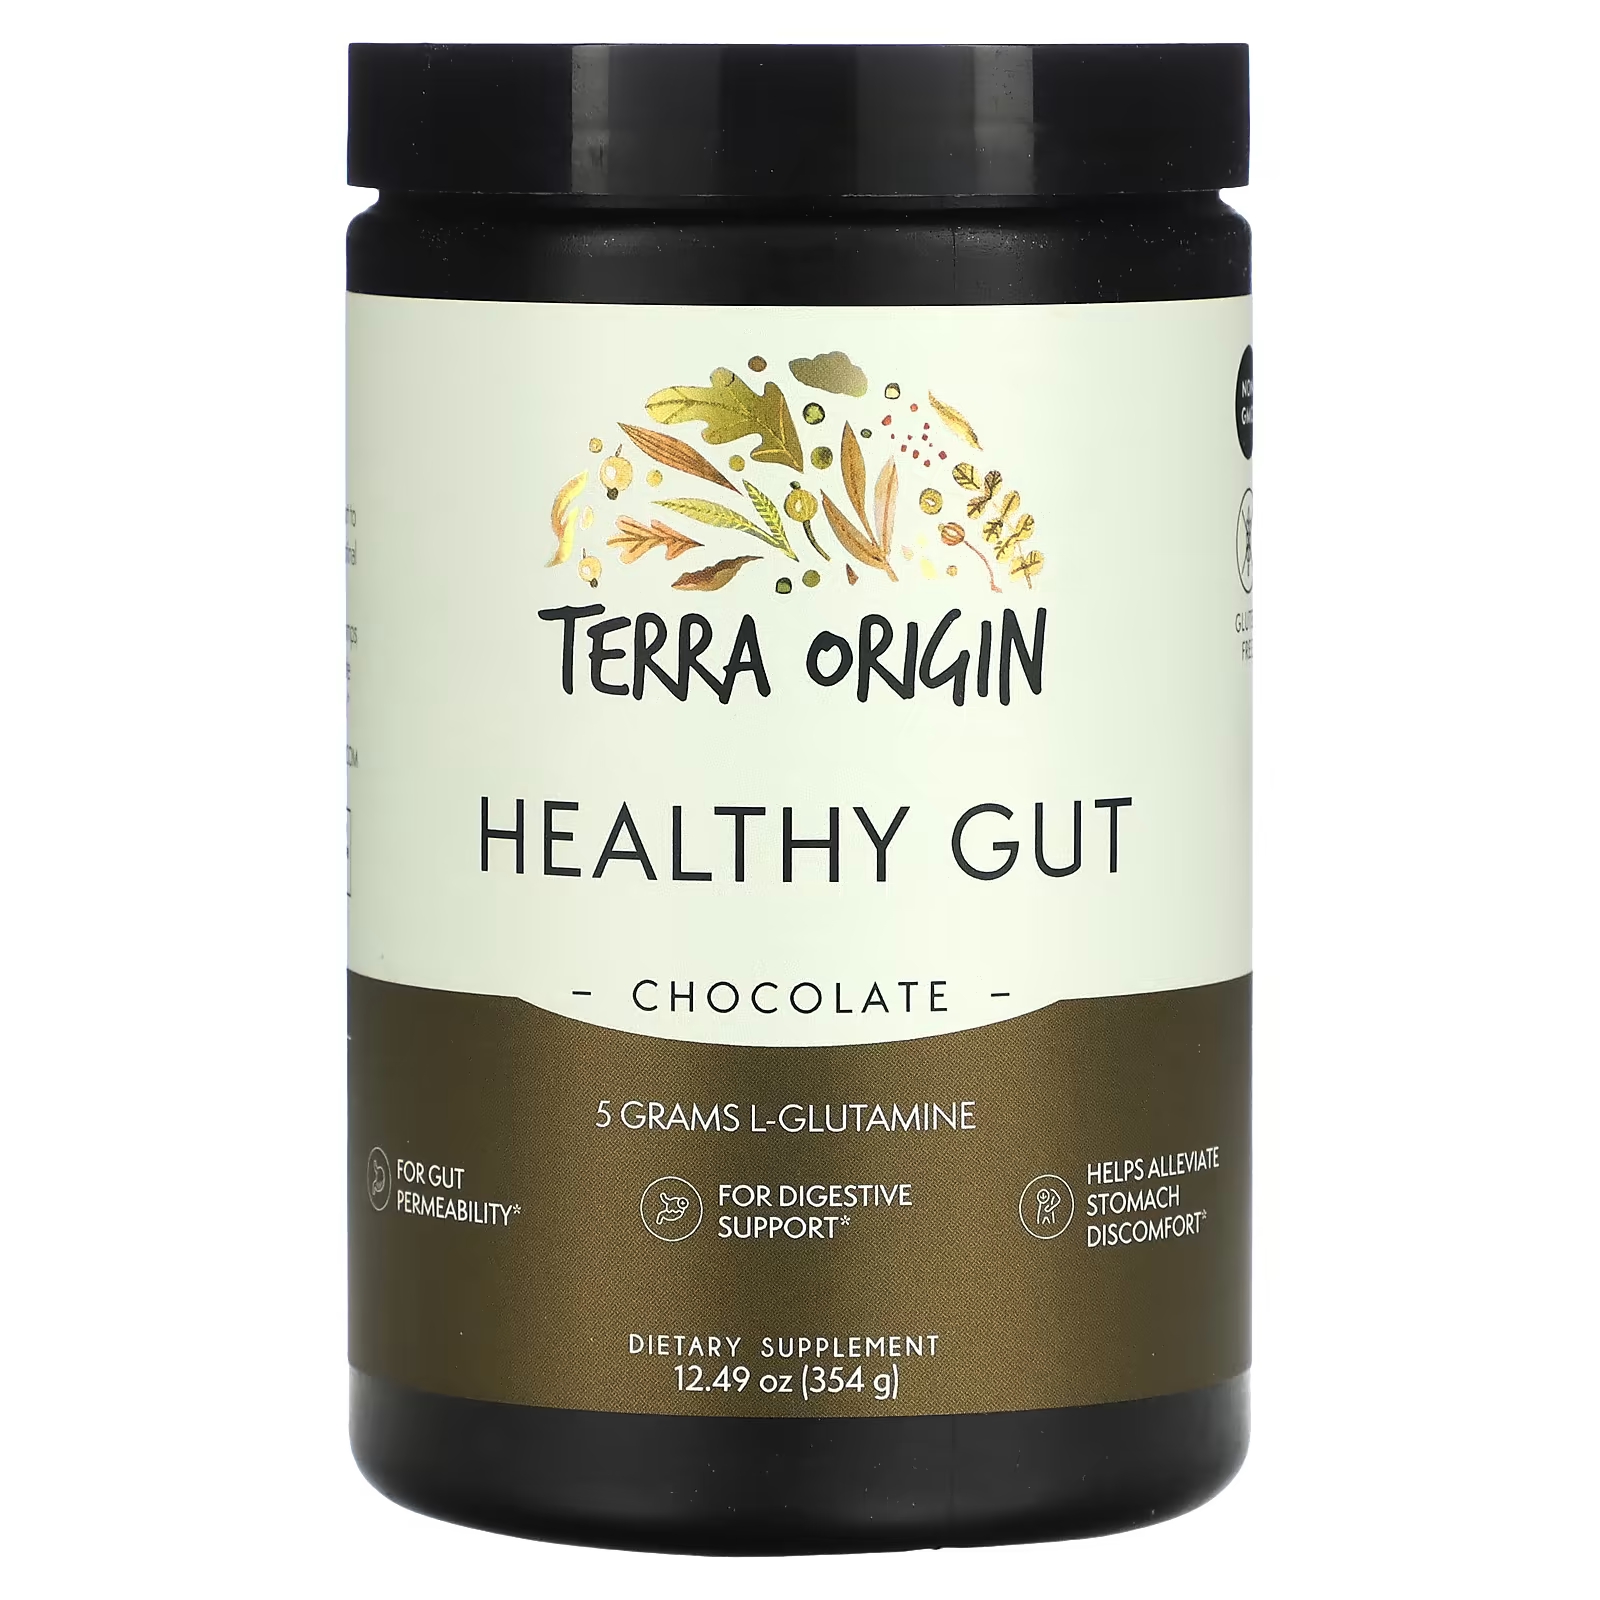 Шоколад Terra Origin для здоровья кишечника, 354 г terra origin healthy gut шоколад 354 г 12 49 унции